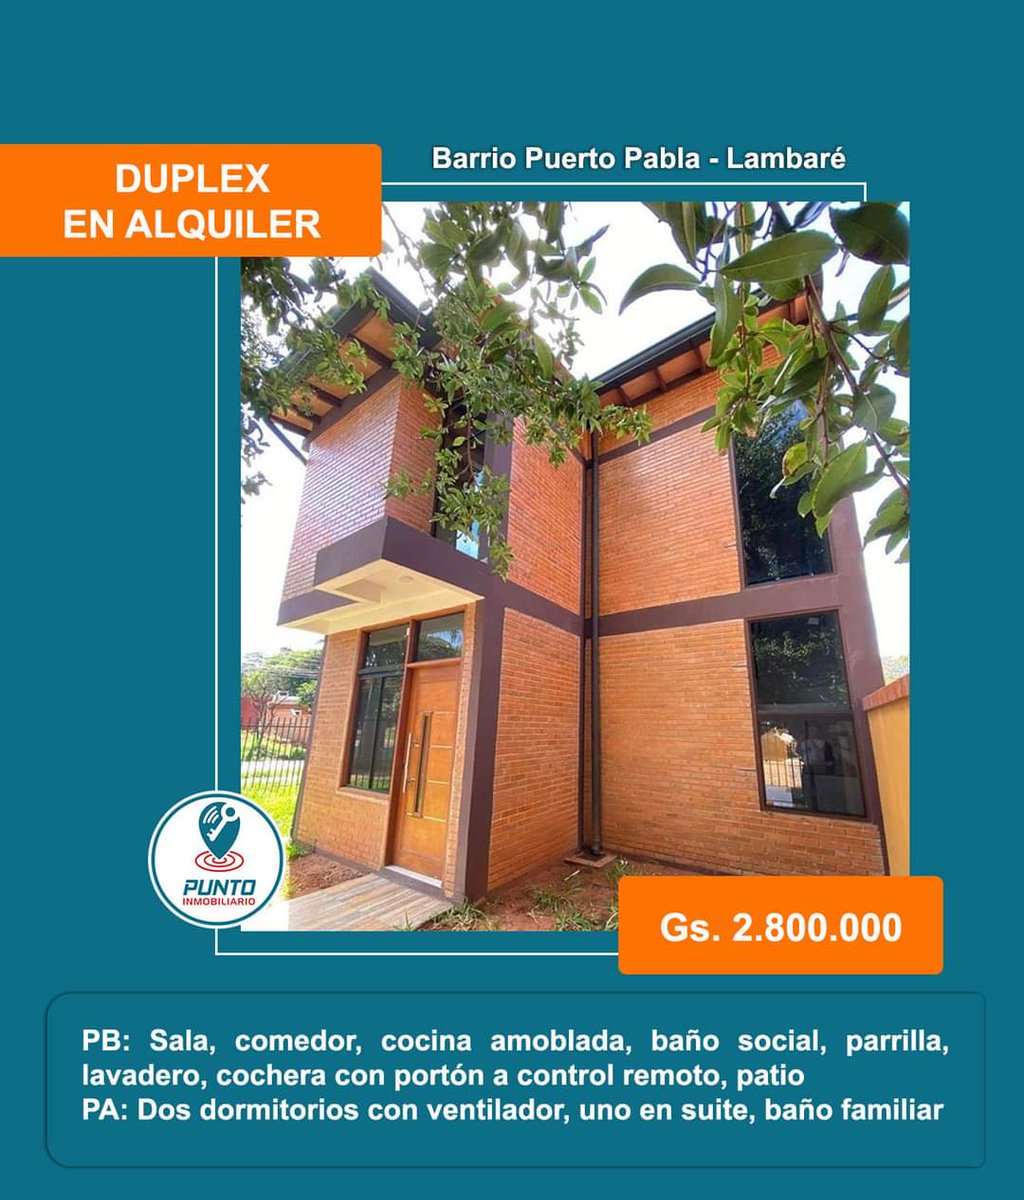 #puntoinmobiliario #experiencia #profesionalismo #confort #calidad #duplex #lambare #barriopuertopabla #alquilerduplex